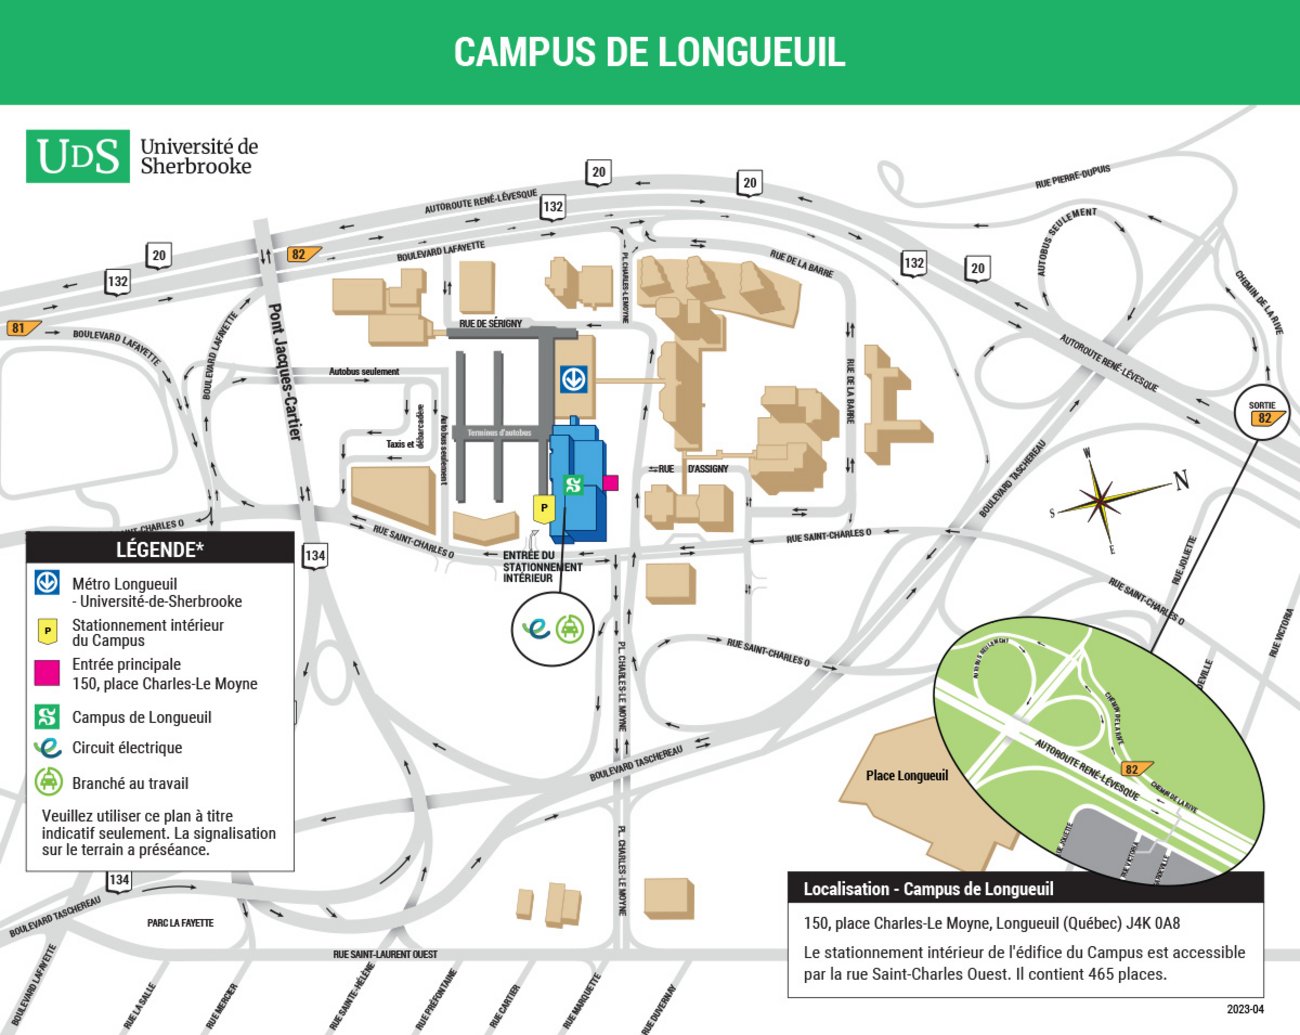 Plan illustré du Campus de Longueuil avec légende